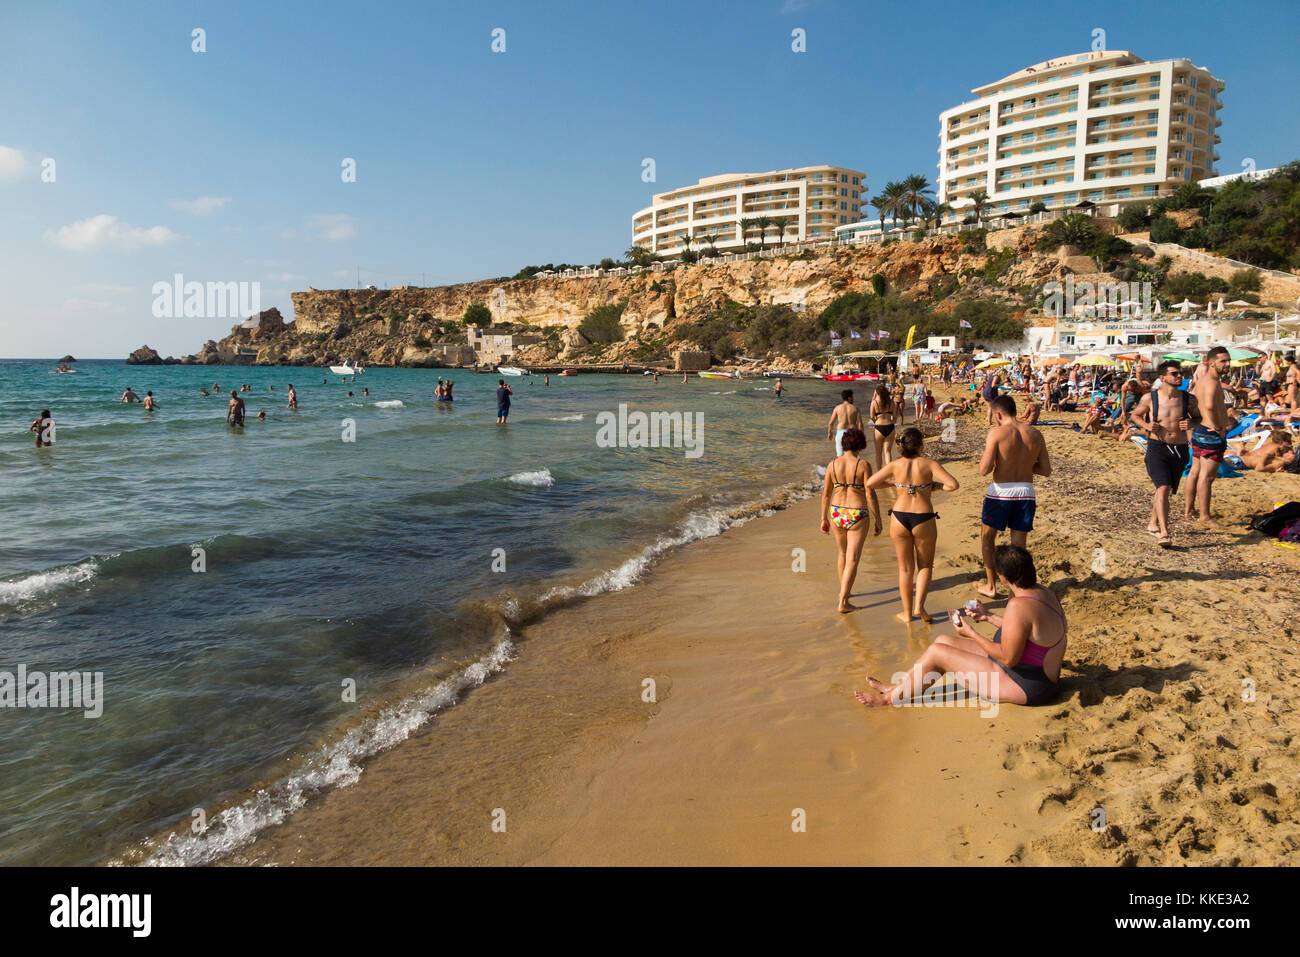 Al mar y a la playa de arena con turistas / bañistas gente divirtiéndose nadar tomar el sol daba por Radisson Blu Resort, Malta Golden Sands. Foto de stock